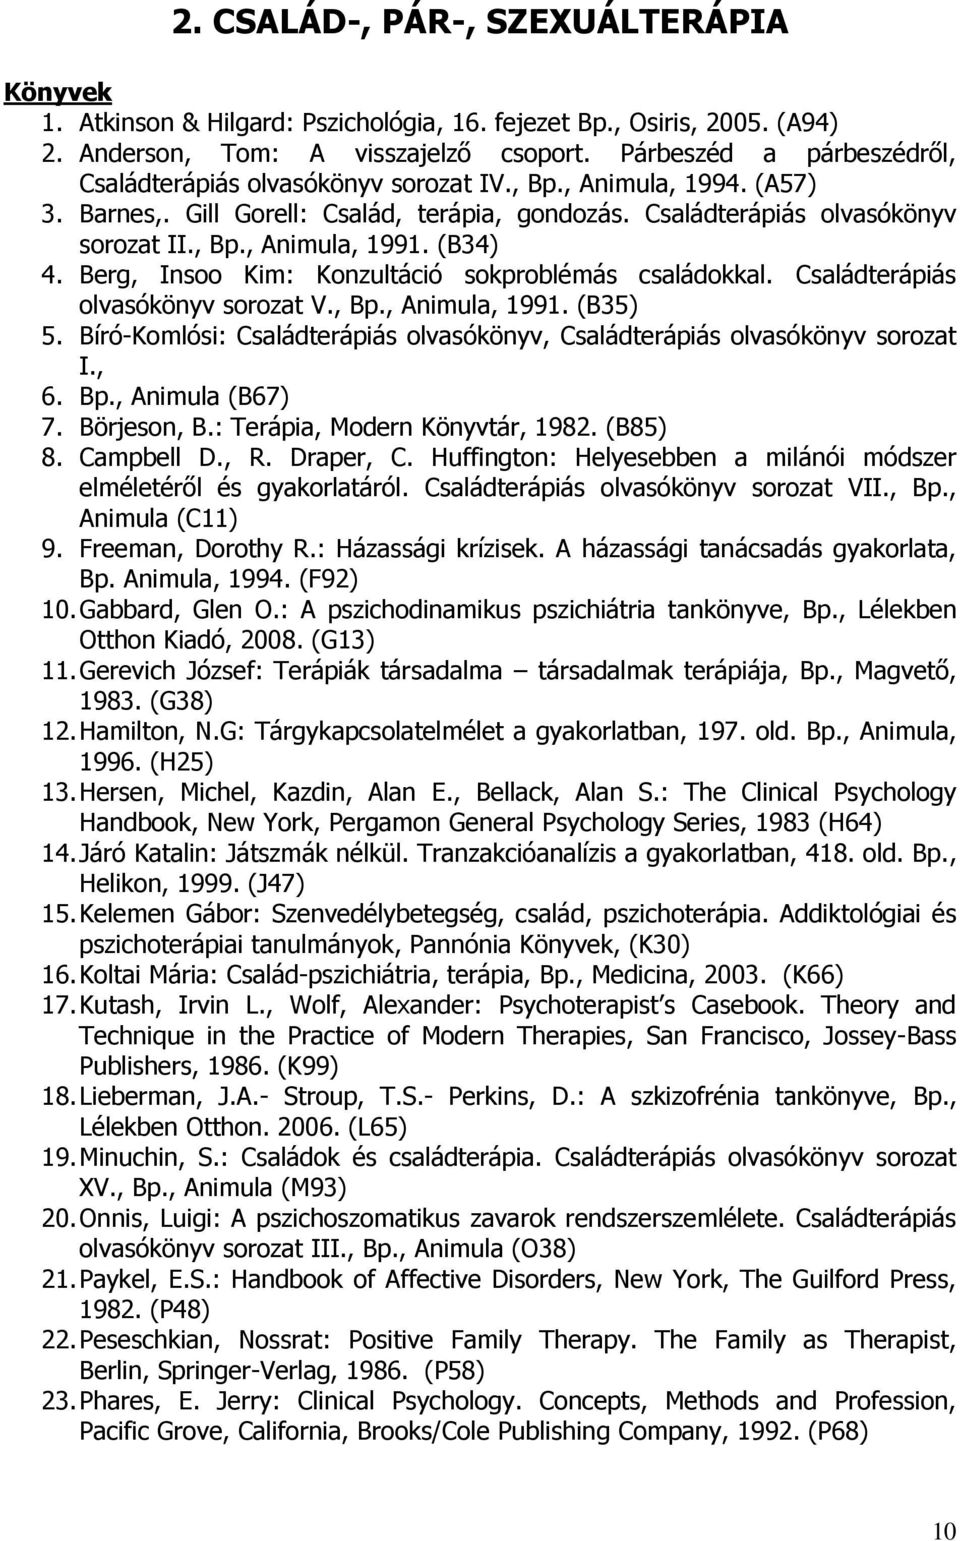 (B34) 4. Berg, Insoo Kim: Konzultáció sokproblémás családokkal. Családterápiás olvasókönyv sorozat V., Bp., Animula, 1991. (B35) 5.